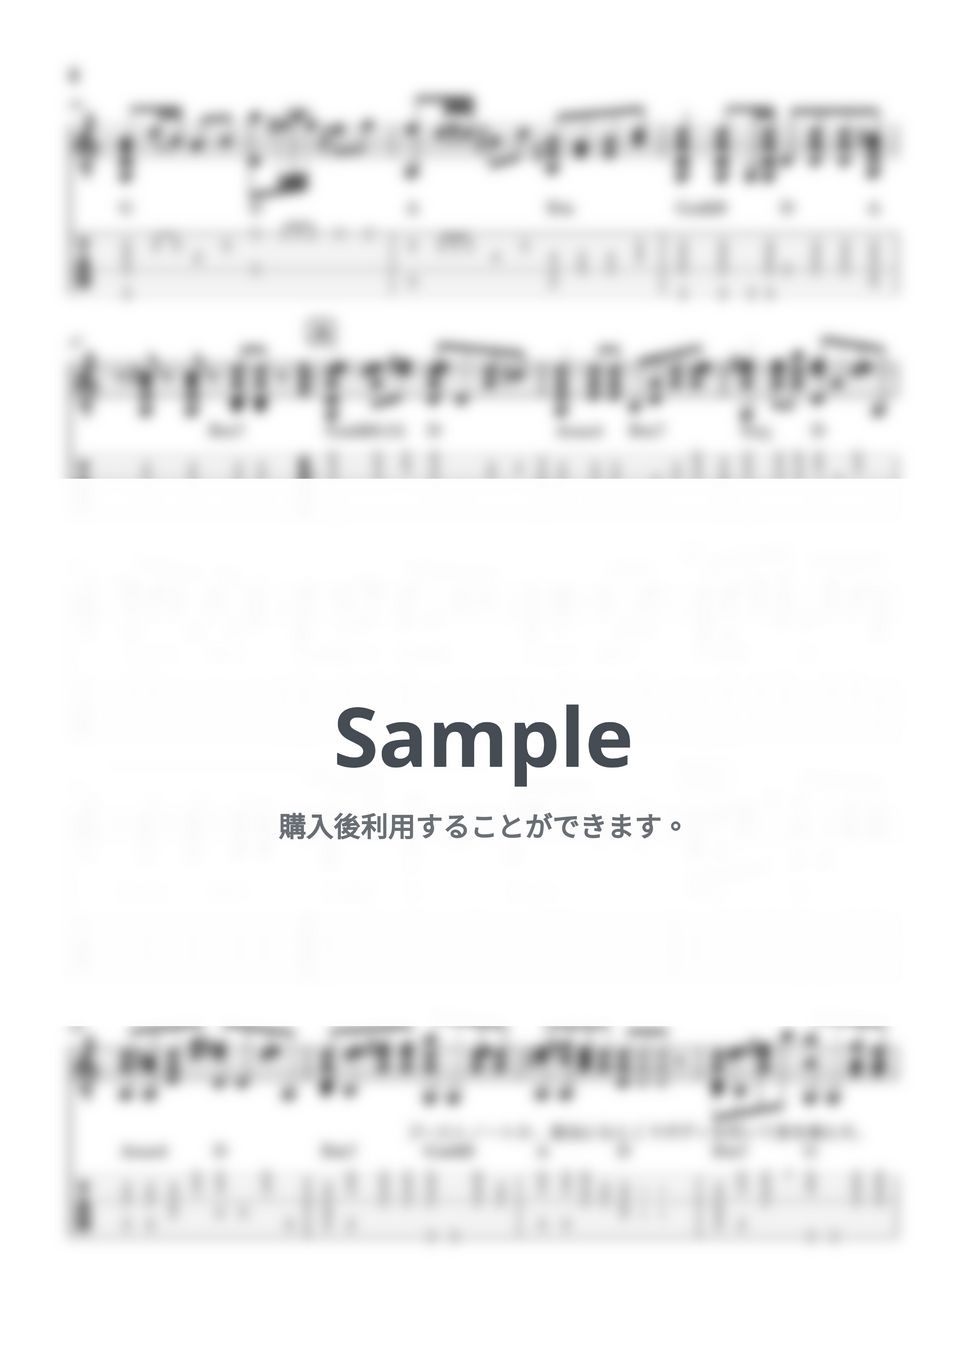 ヨルシカ - ただ君に晴れ (ソロギターアレンジTAB譜) by Dsuke